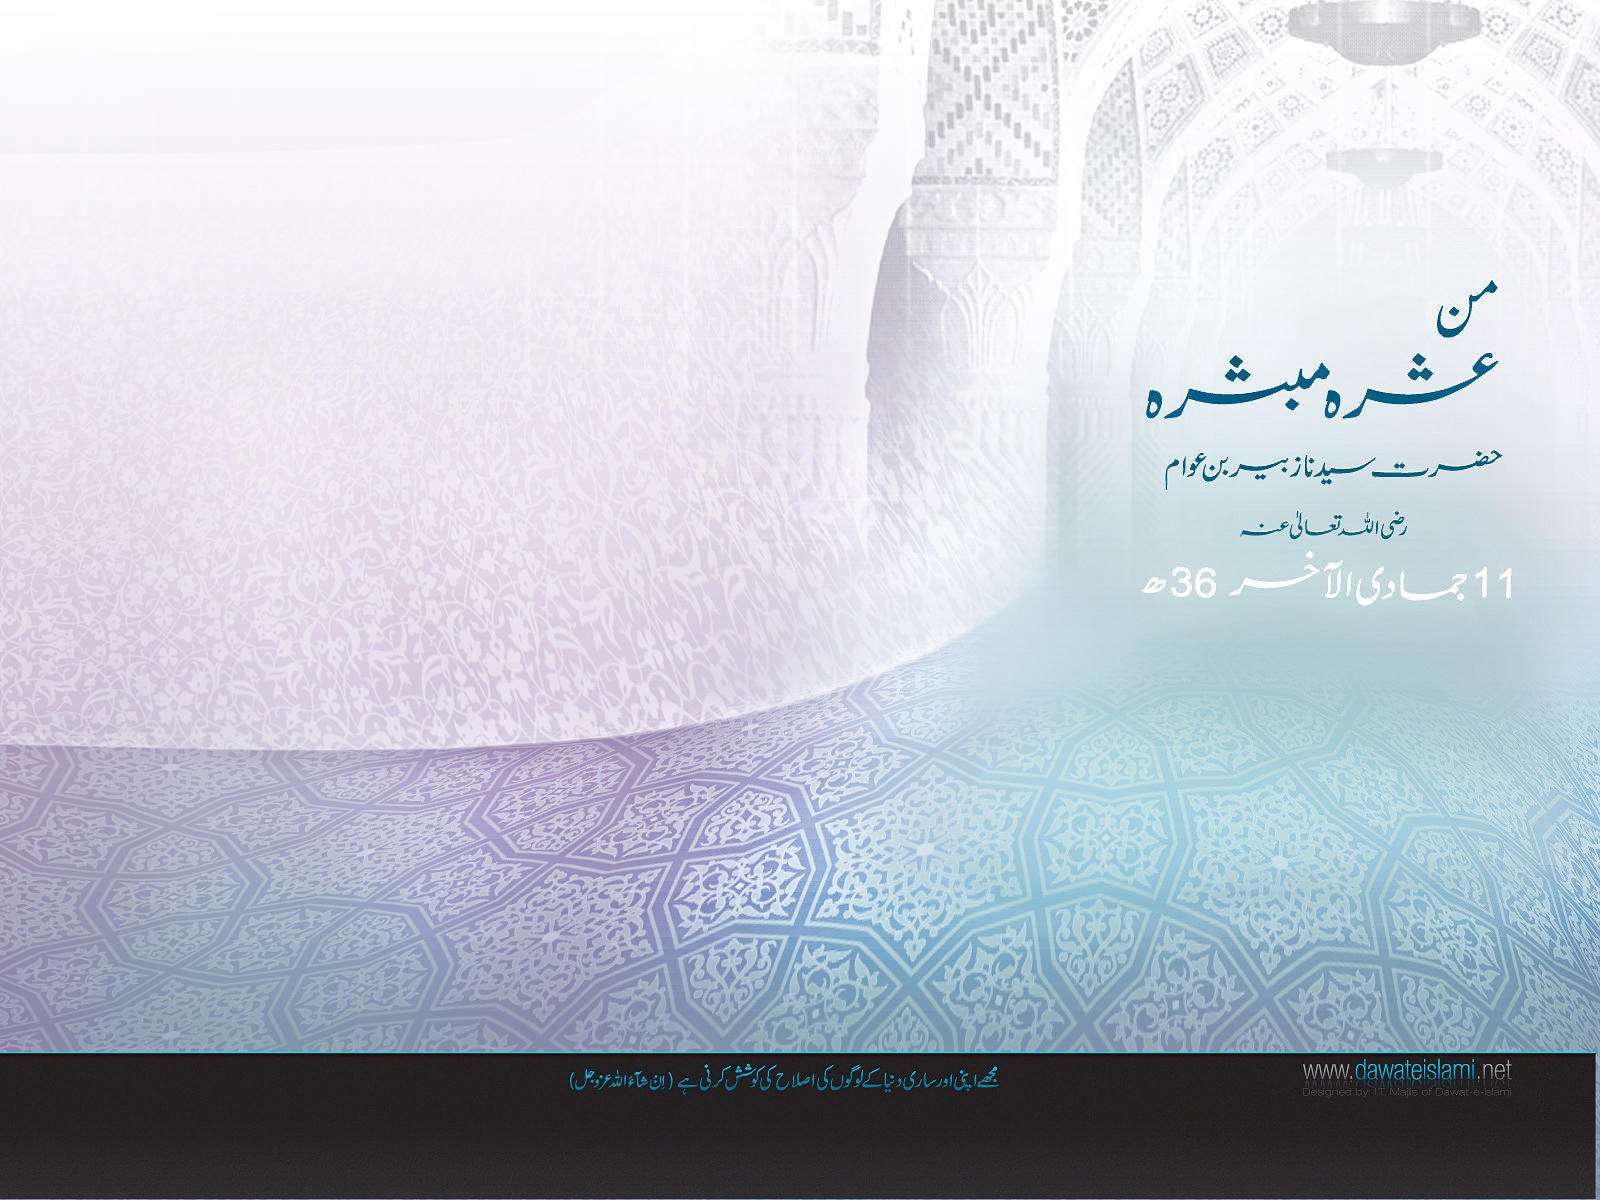 Wallpapers-Jumad-al-Ukhra 04